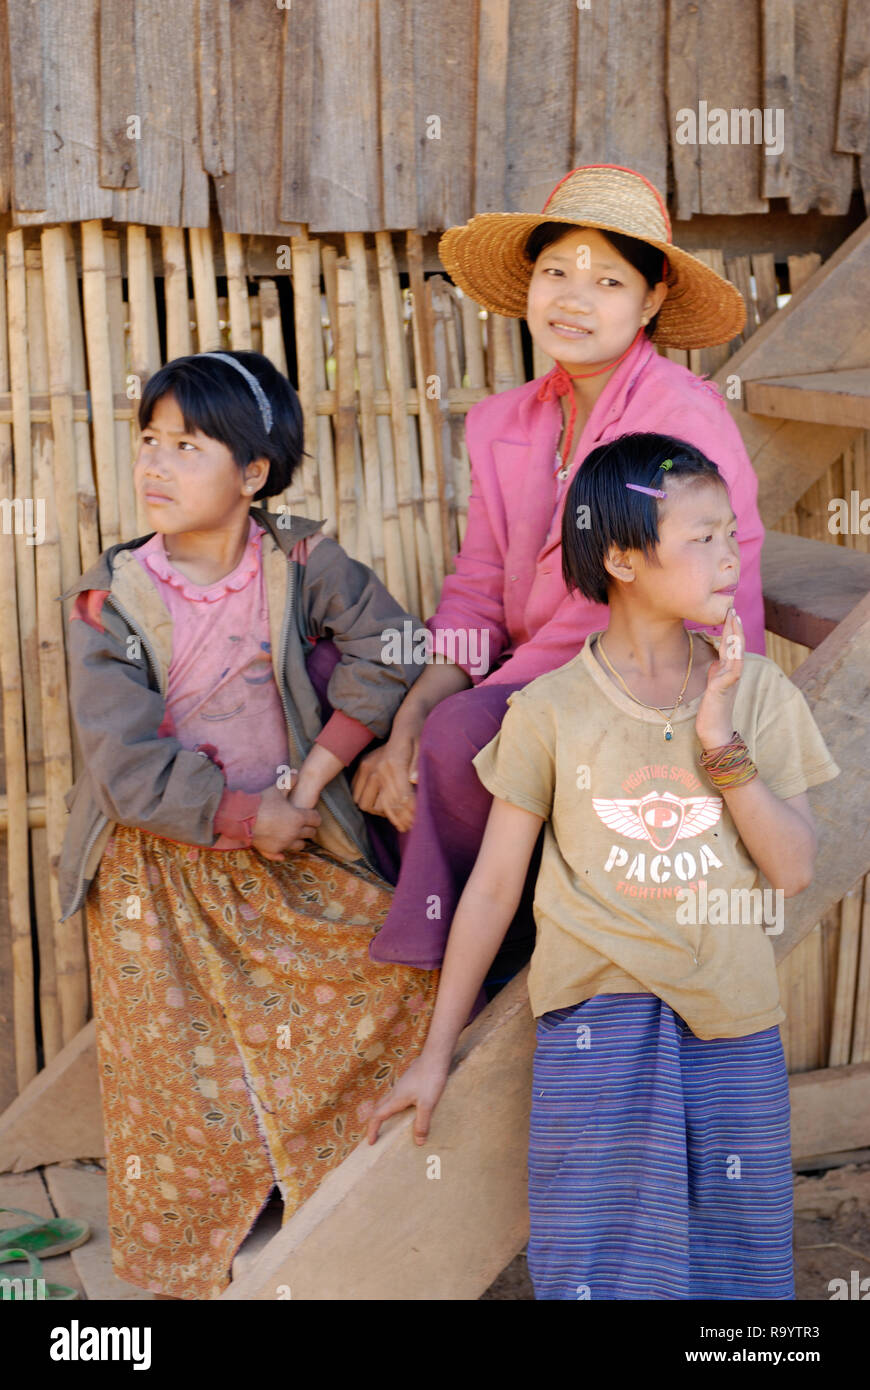 ASIEN, MYANMAR Birmania, Birmania, Kalaw, suedlicher Shan Staat, Menschen des Volksstamm der Palaung, traditionell gekleidete Frau mit Kinder |ASIA, MYANMA Foto Stock